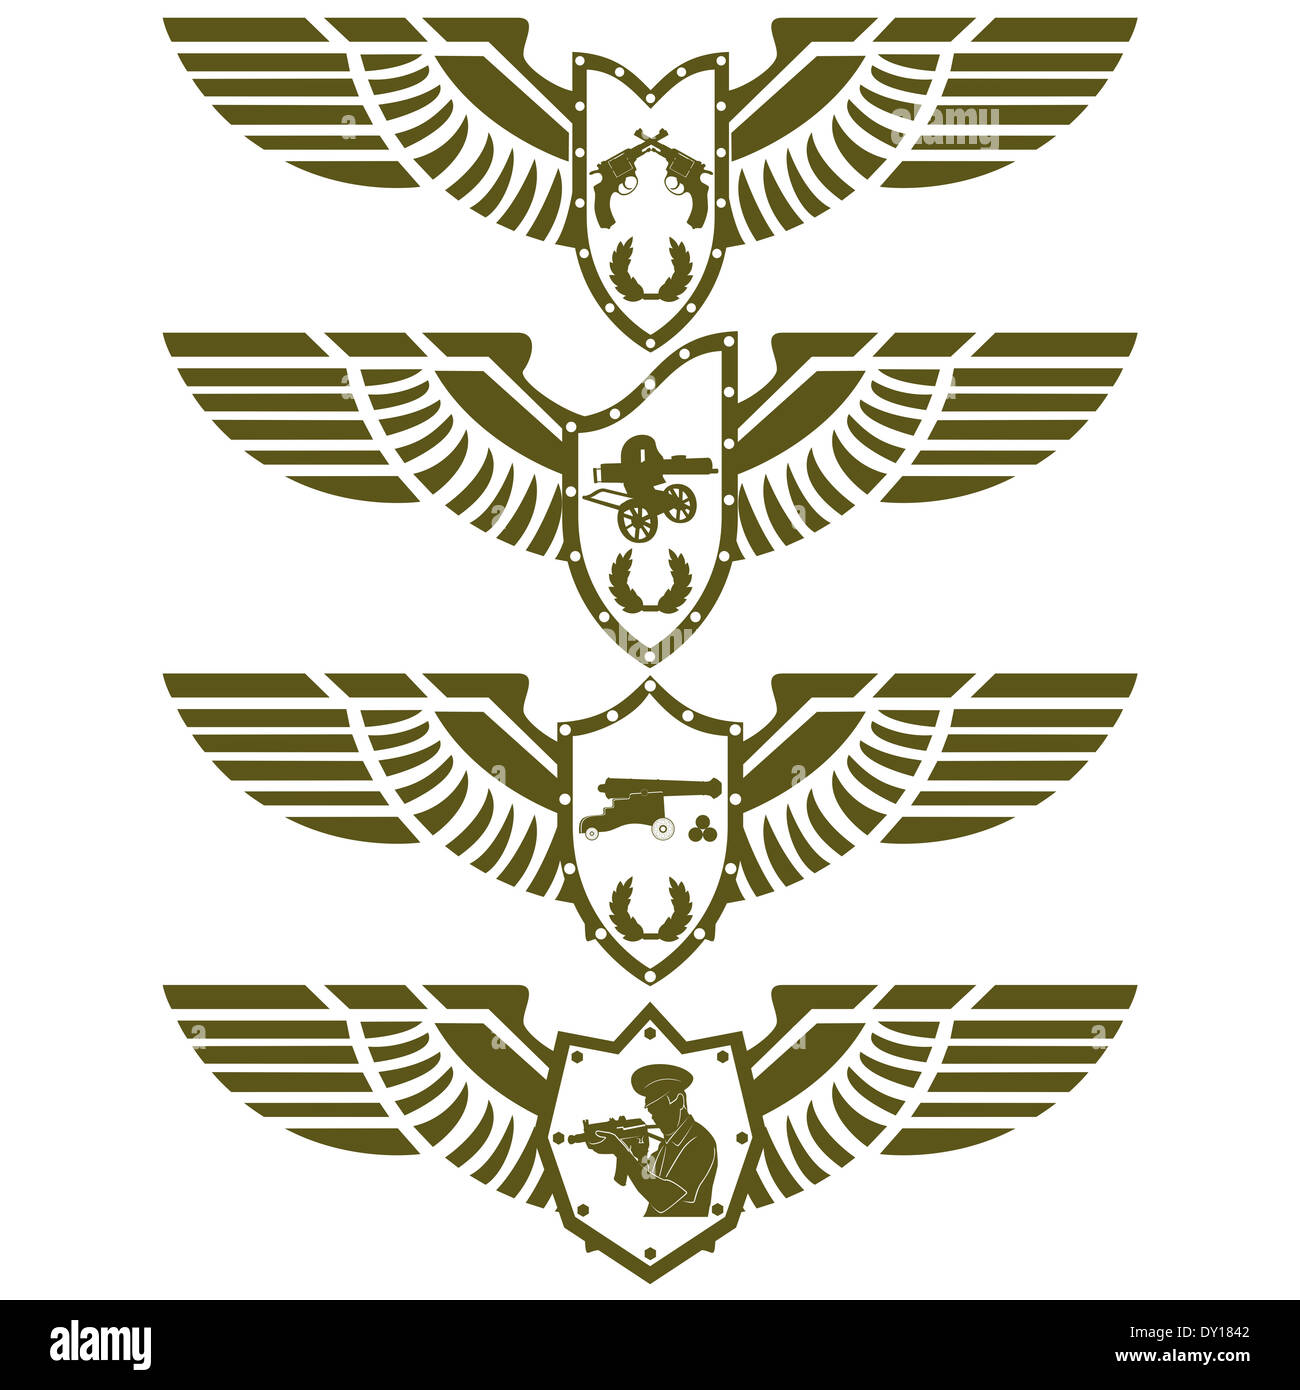 Abstract badge militari con le ali. Immagine su sfondo bianco. Foto Stock